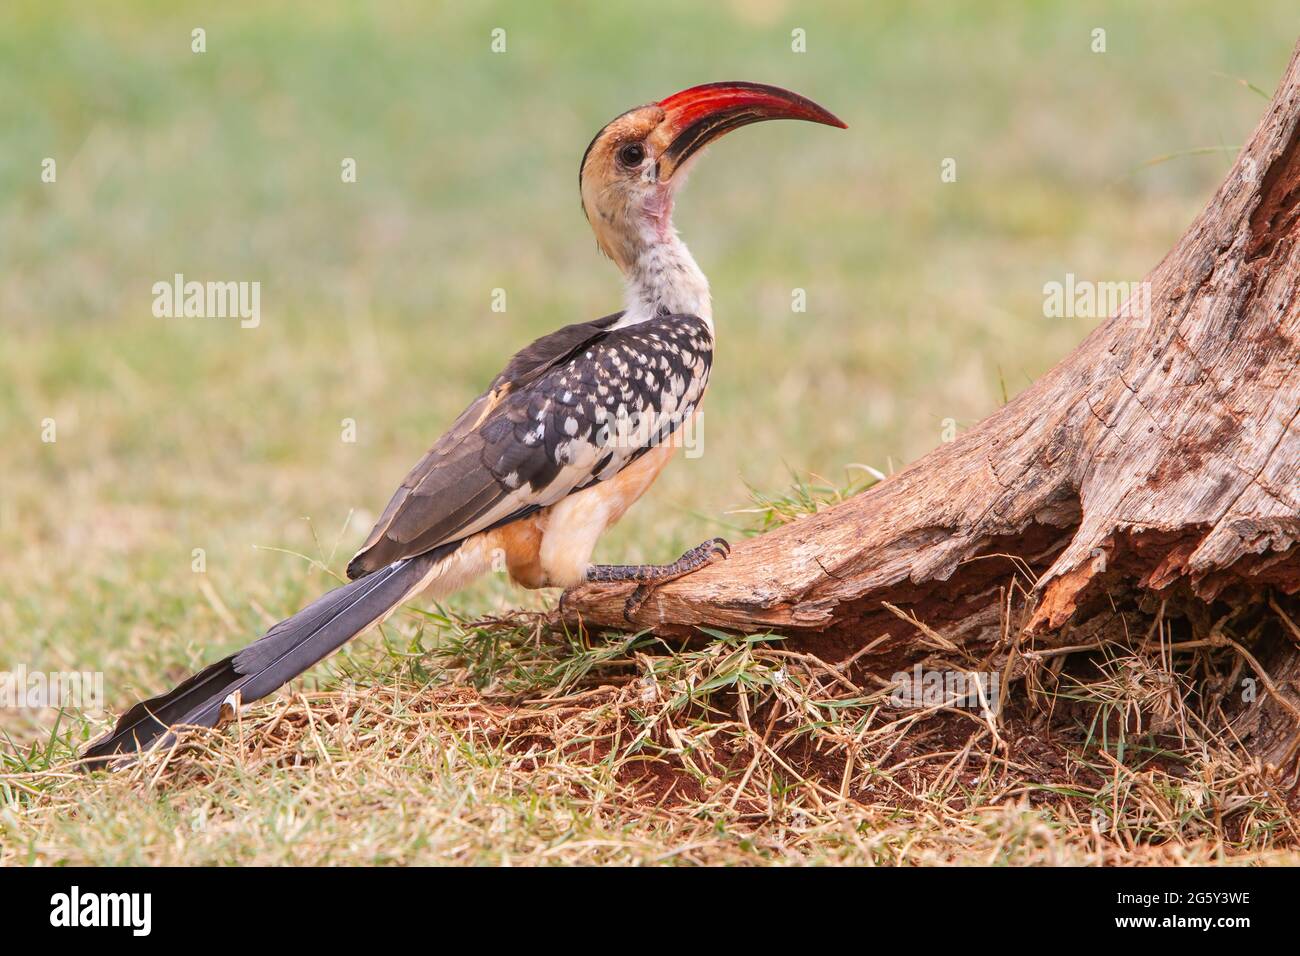 nördlicher Rotschnabelhornschnabel, Tockus erythrorhyncchus, einzelner Vogel, der in kurzer Vegetation auf dem Boden steht, Kenia Stockfoto